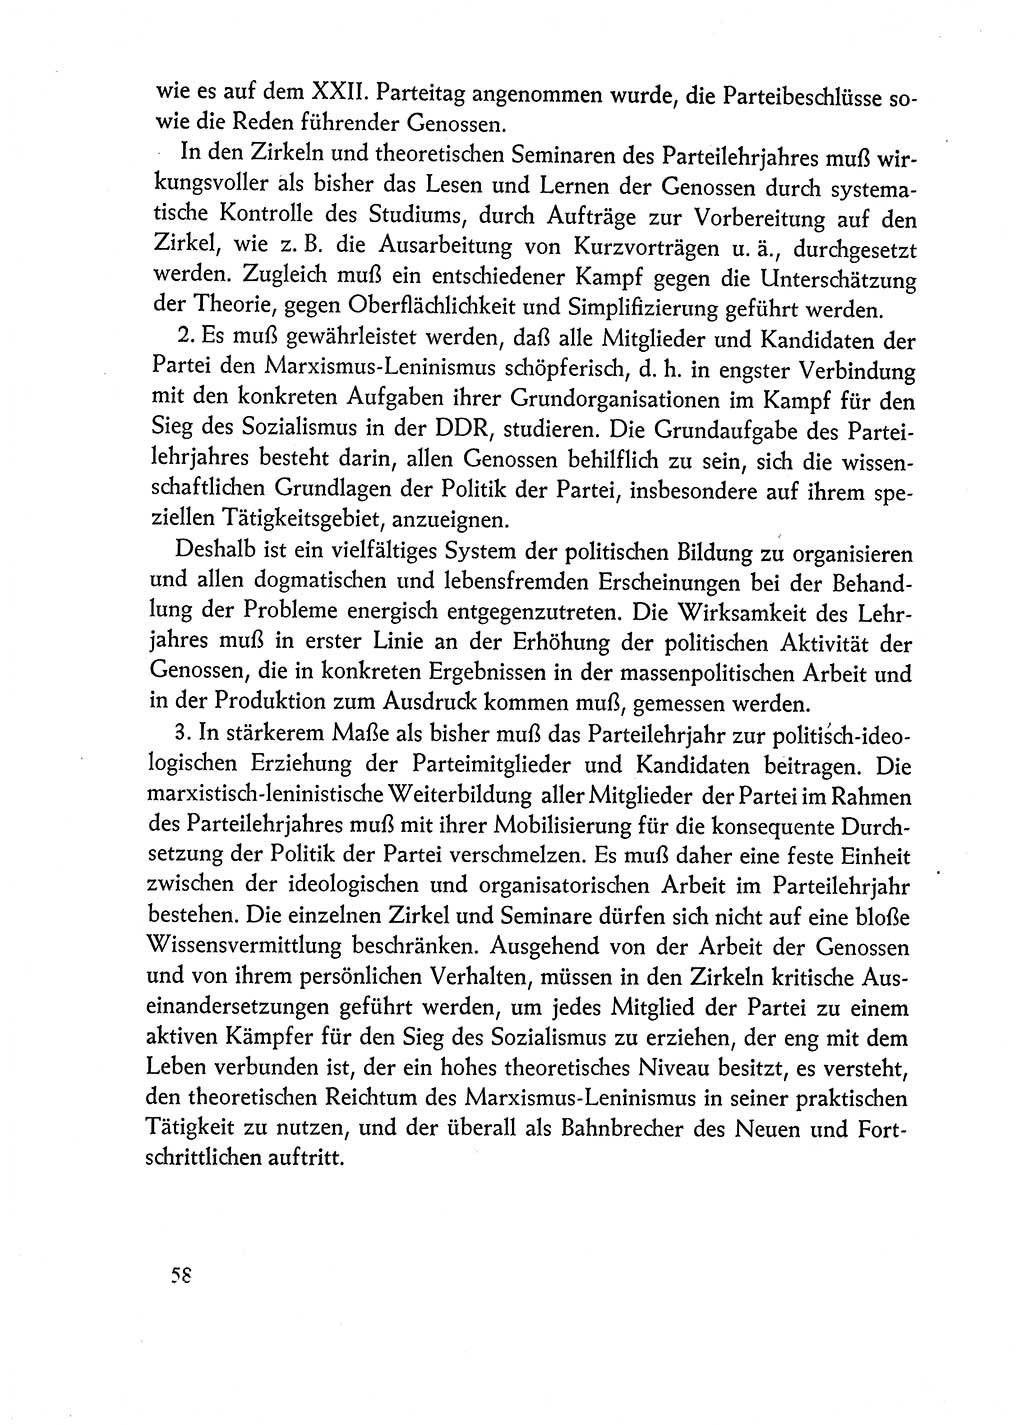 Dokumente der Sozialistischen Einheitspartei Deutschlands (SED) [Deutsche Demokratische Republik (DDR)] 1962-1963, Seite 58 (Dok. SED DDR 1962-1963, S. 58)